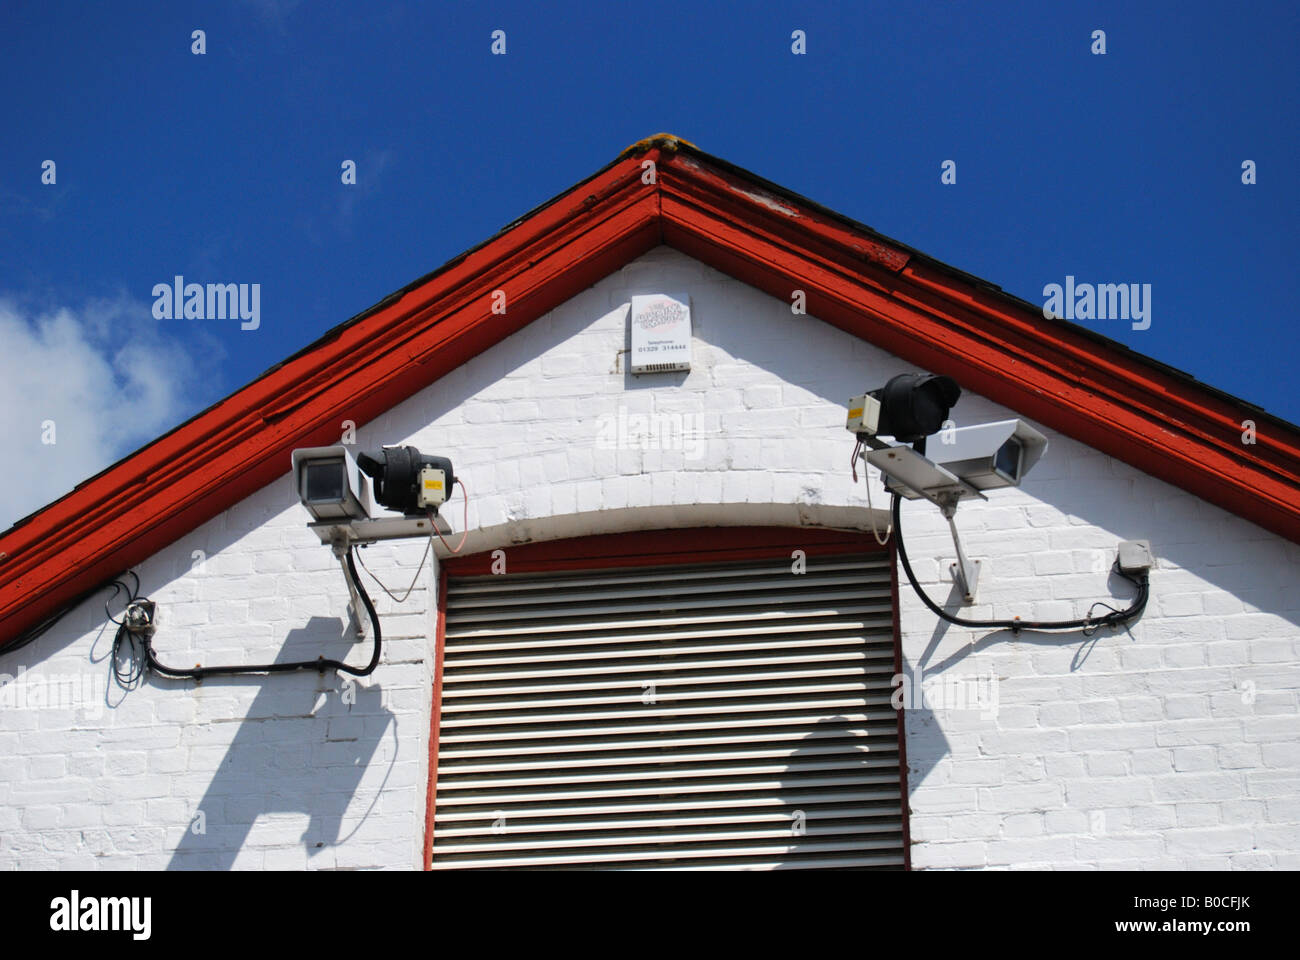 Caméras de surveillance sur la construction, Gosport, Hampshire, Angleterre, Royaume-Uni Banque D'Images